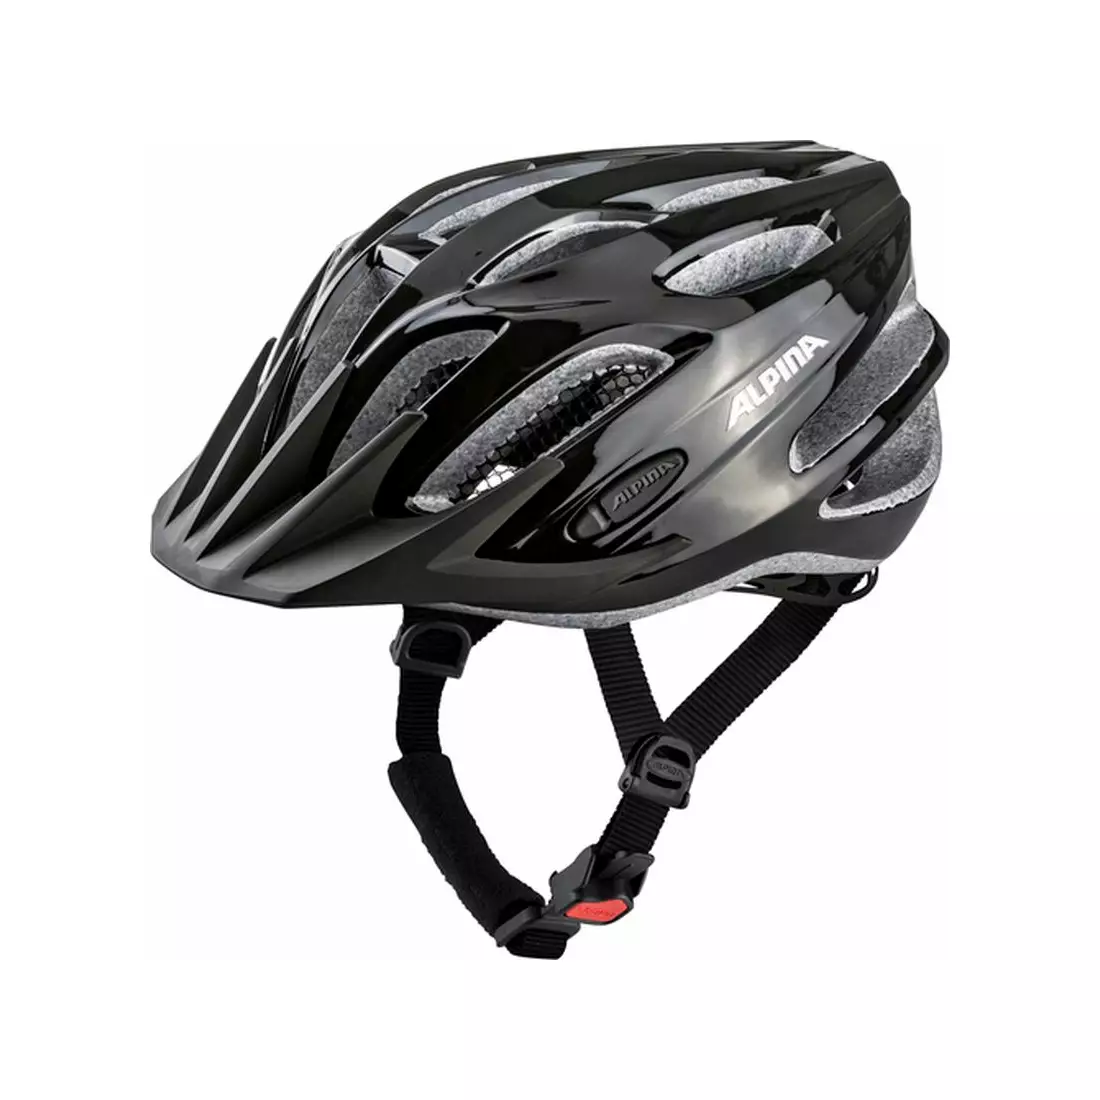 ALPINA TOUR 2.0 BLACK bicycle helmet